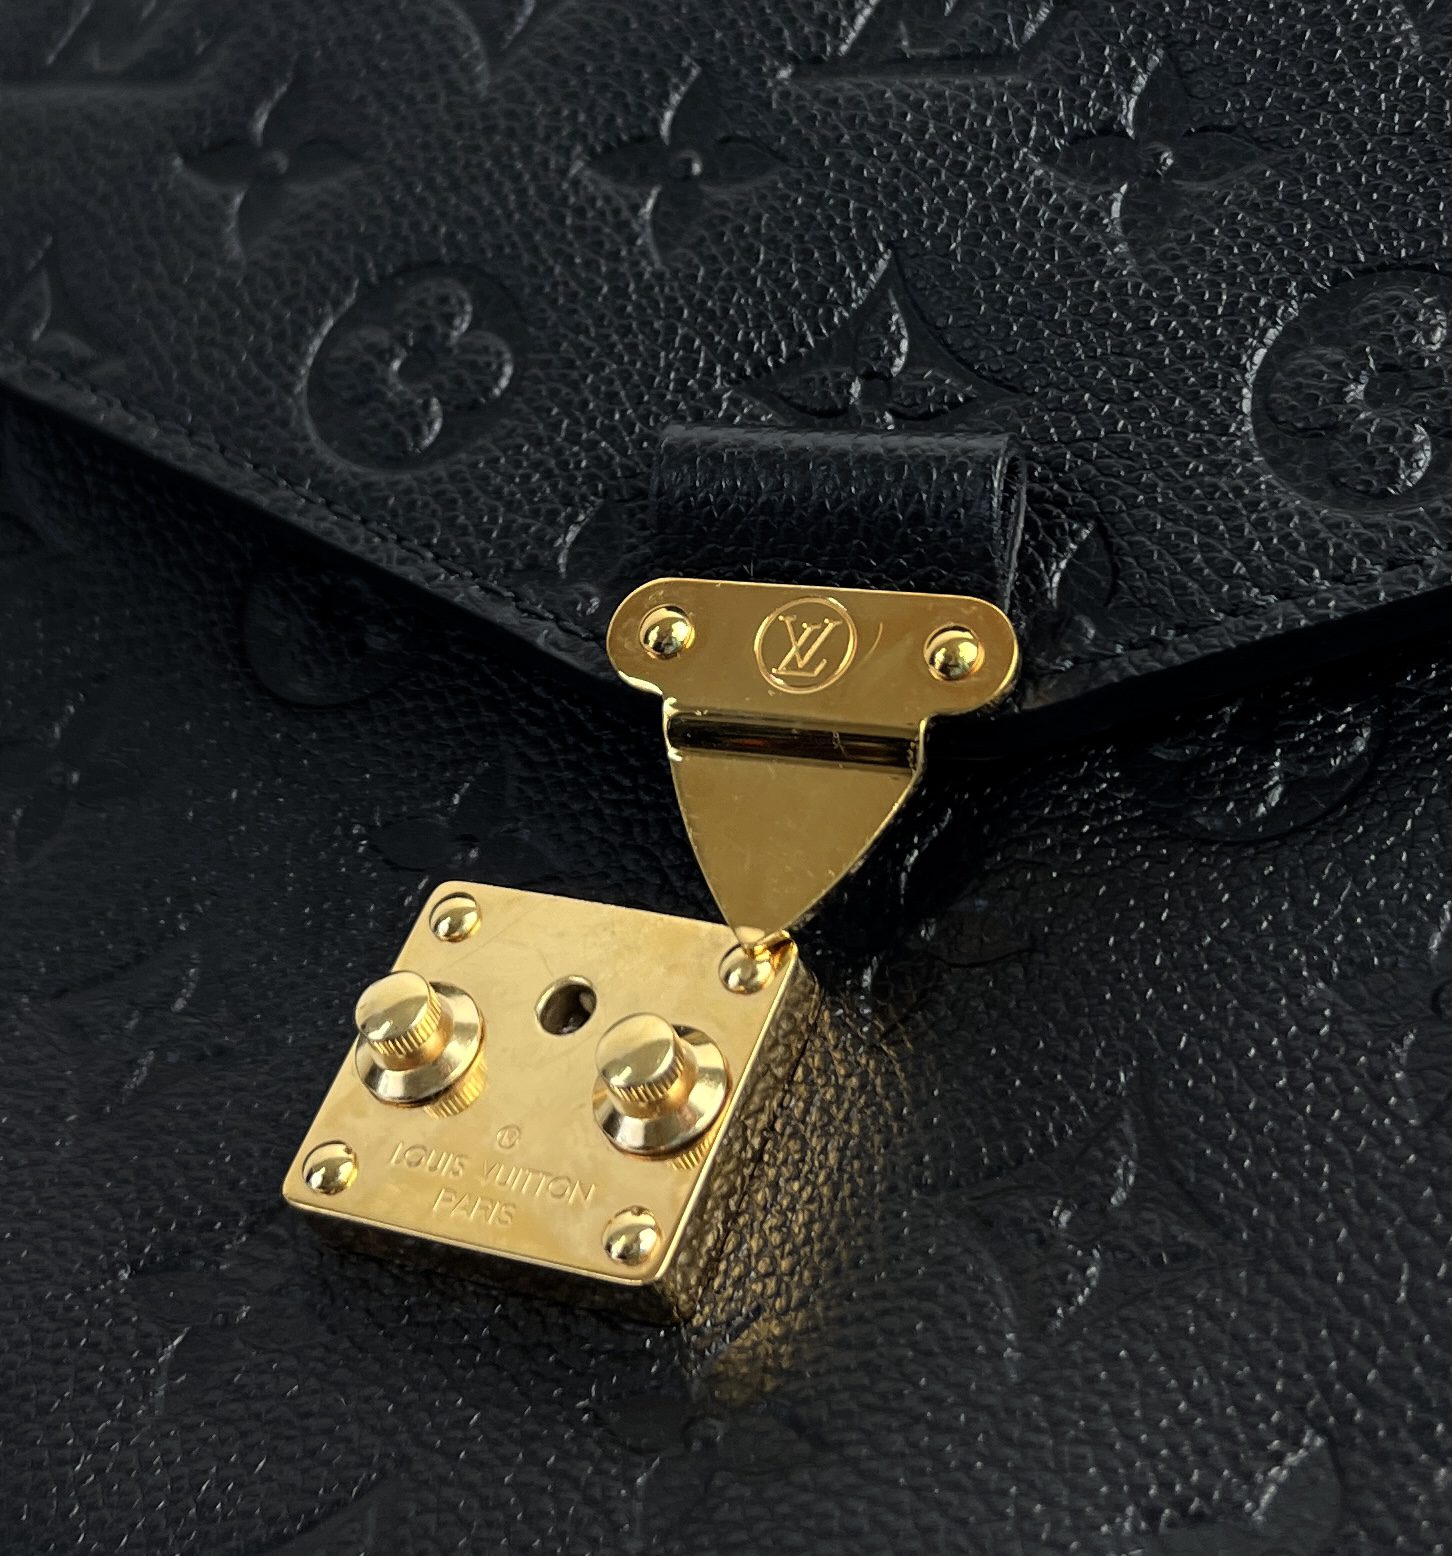 Louis Vuitton Pochette Metis Monogram Empreinte REVIEW- What fits inside?  Mod Shots 